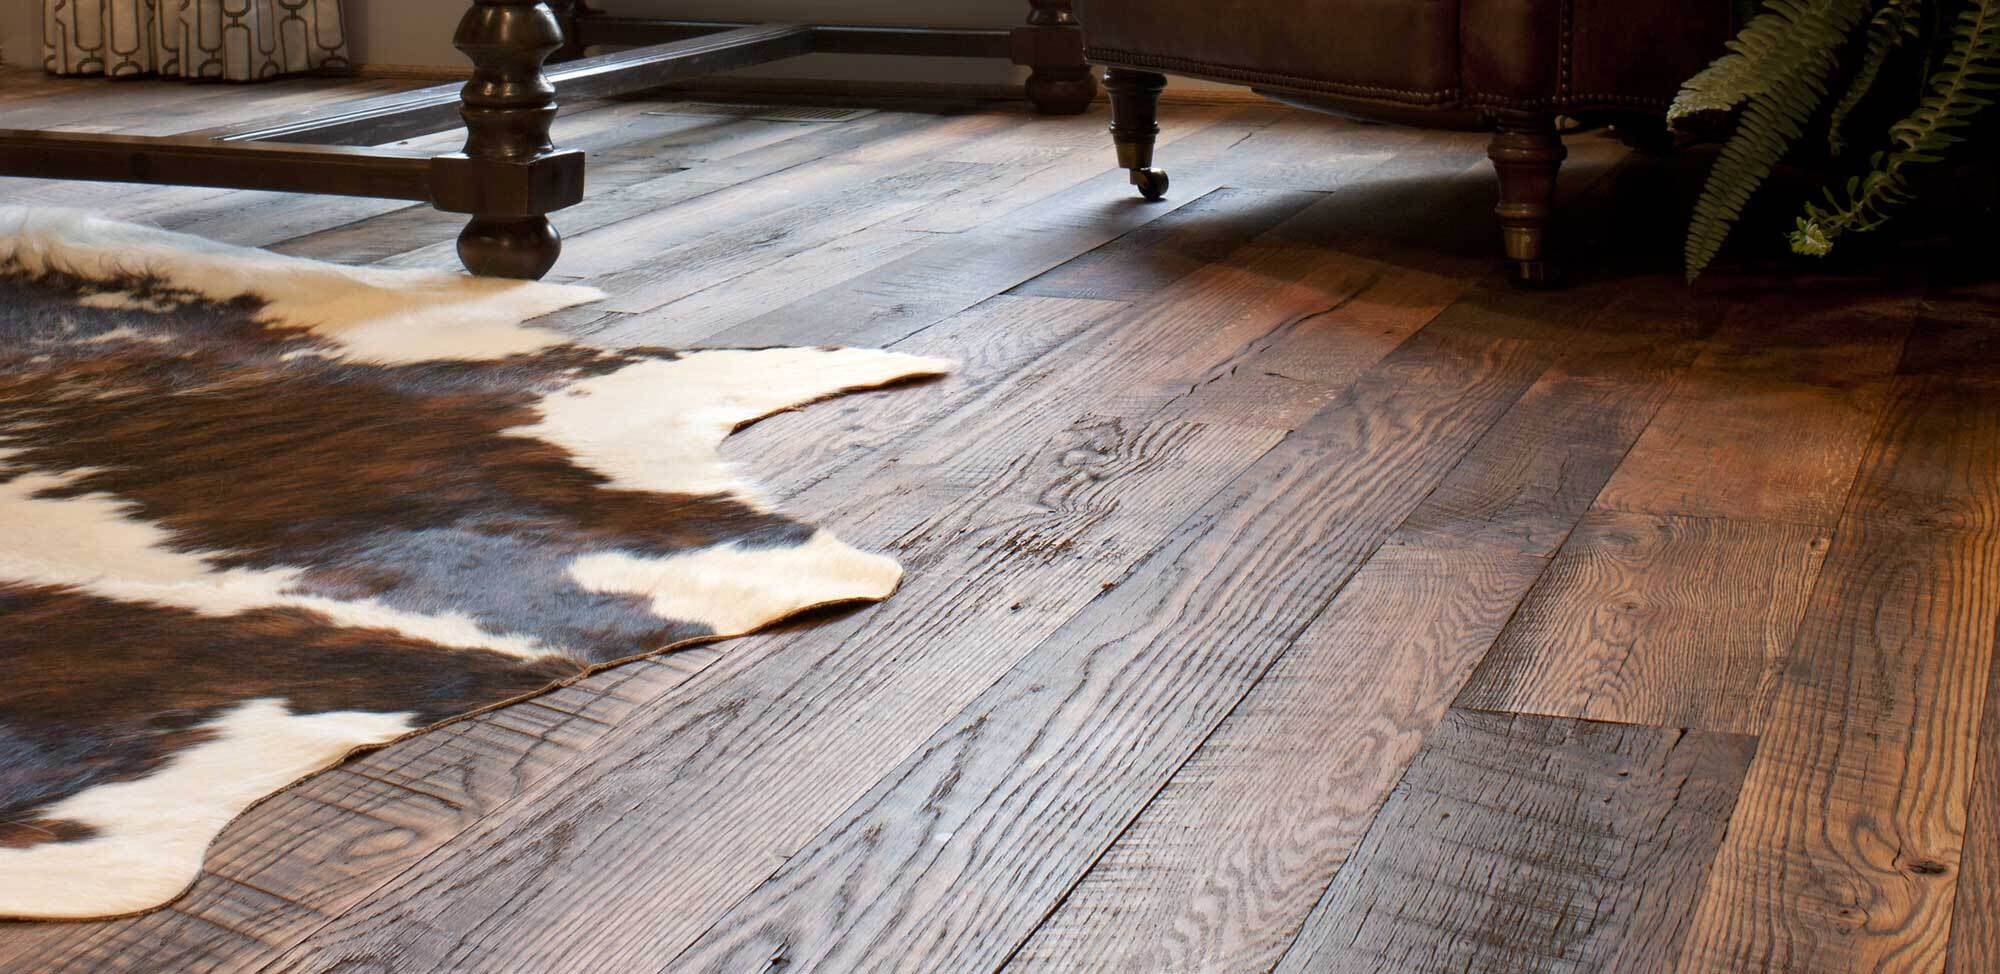 Reclaimed engineered wood flooring with rustic look.